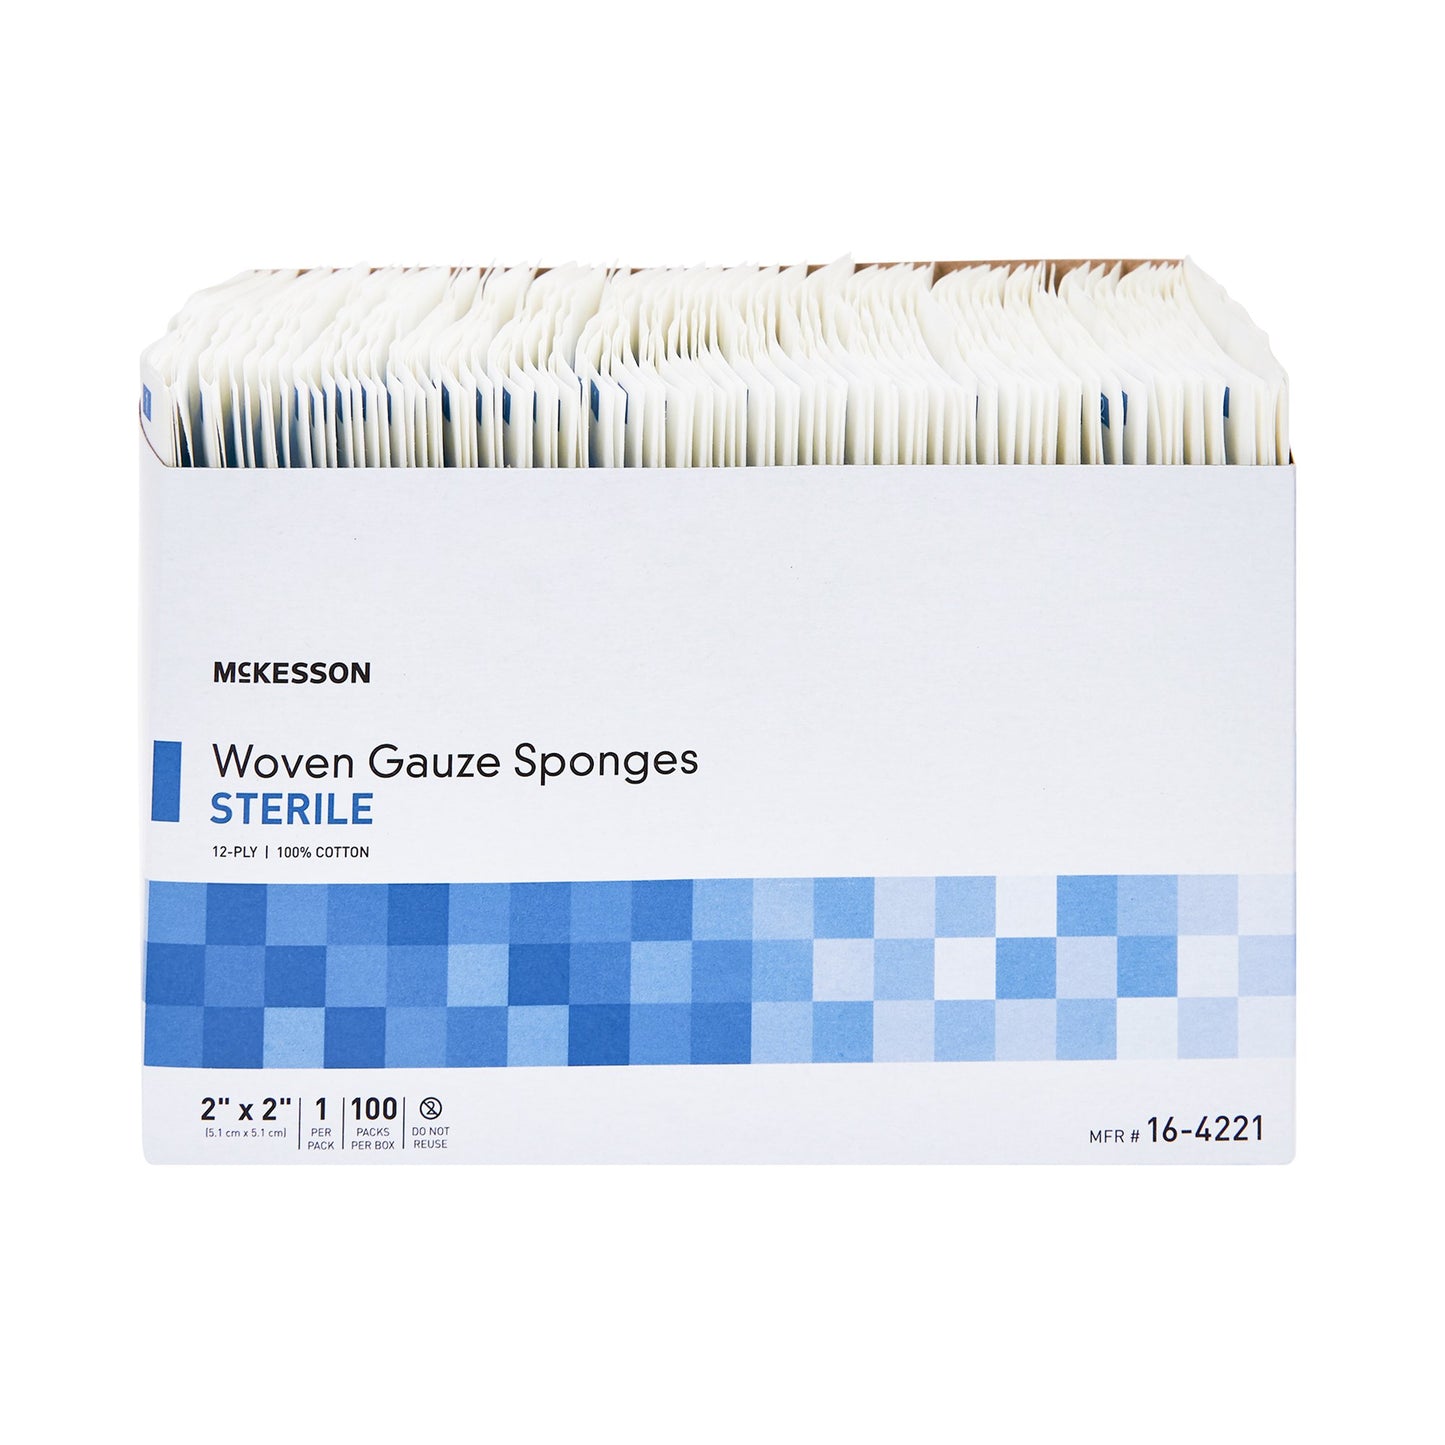 Gauze Sponge McKesson Cotton 12-Ply 2 X 2 Inch Square Sterile, 100 ct